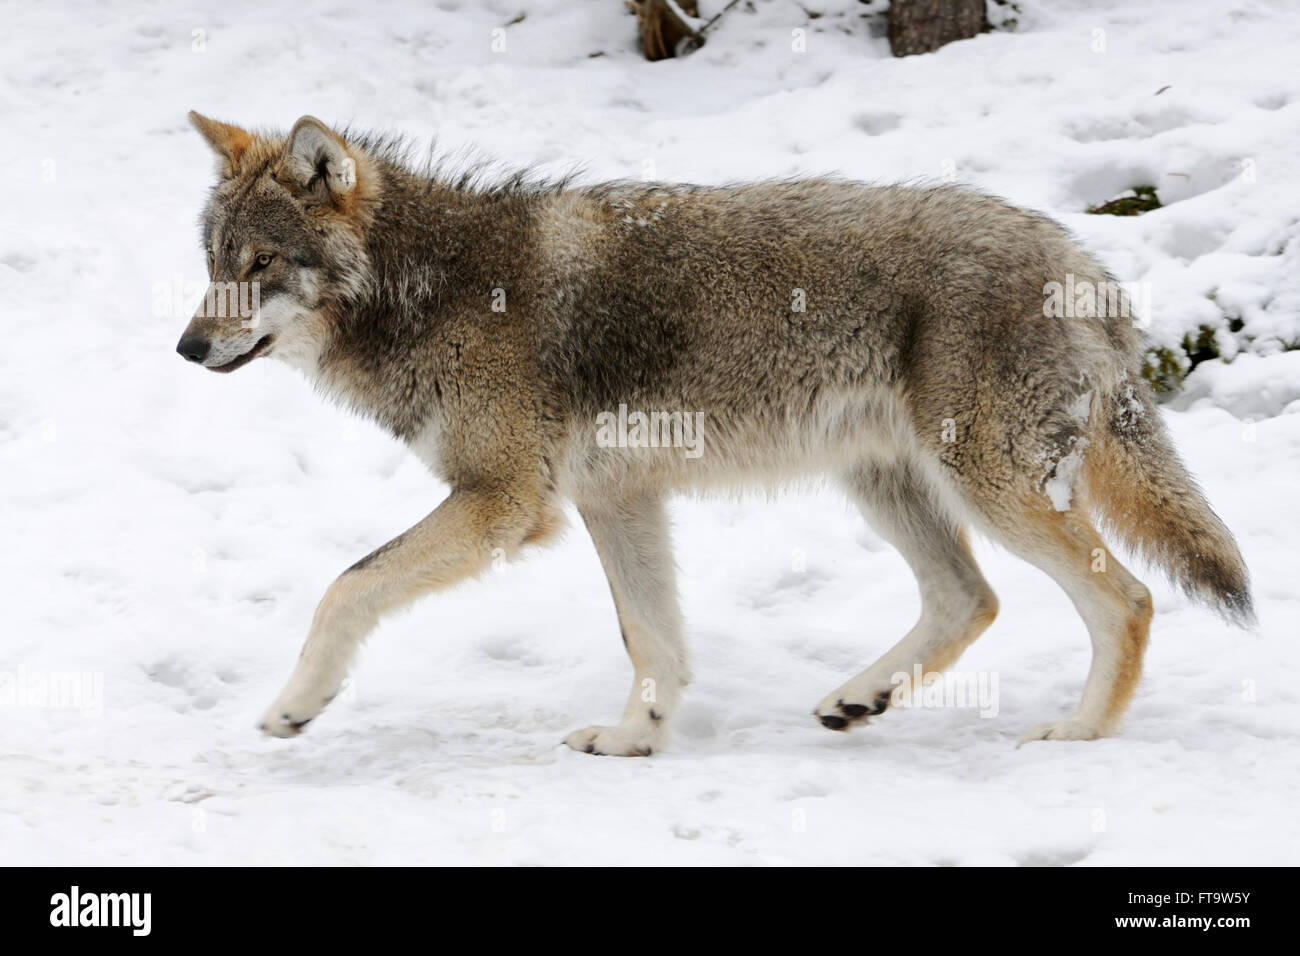 Loup eurasien / Loup gris (Canis lupus ) en fourrure d'hiver, présentation caractéristiques typiques de l'environnement couvert de neige. Banque D'Images